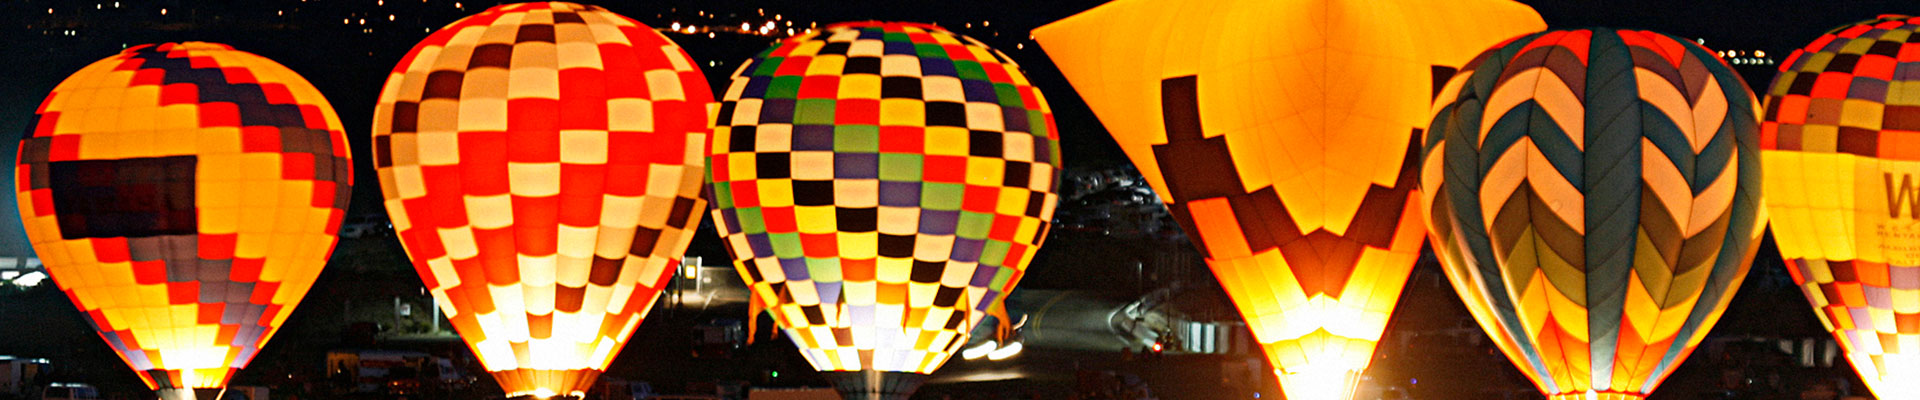 Fantasy RV Tours: 6 Day Albuquerque Balloon Fiesta Opening Rally (06UAOP-100324)